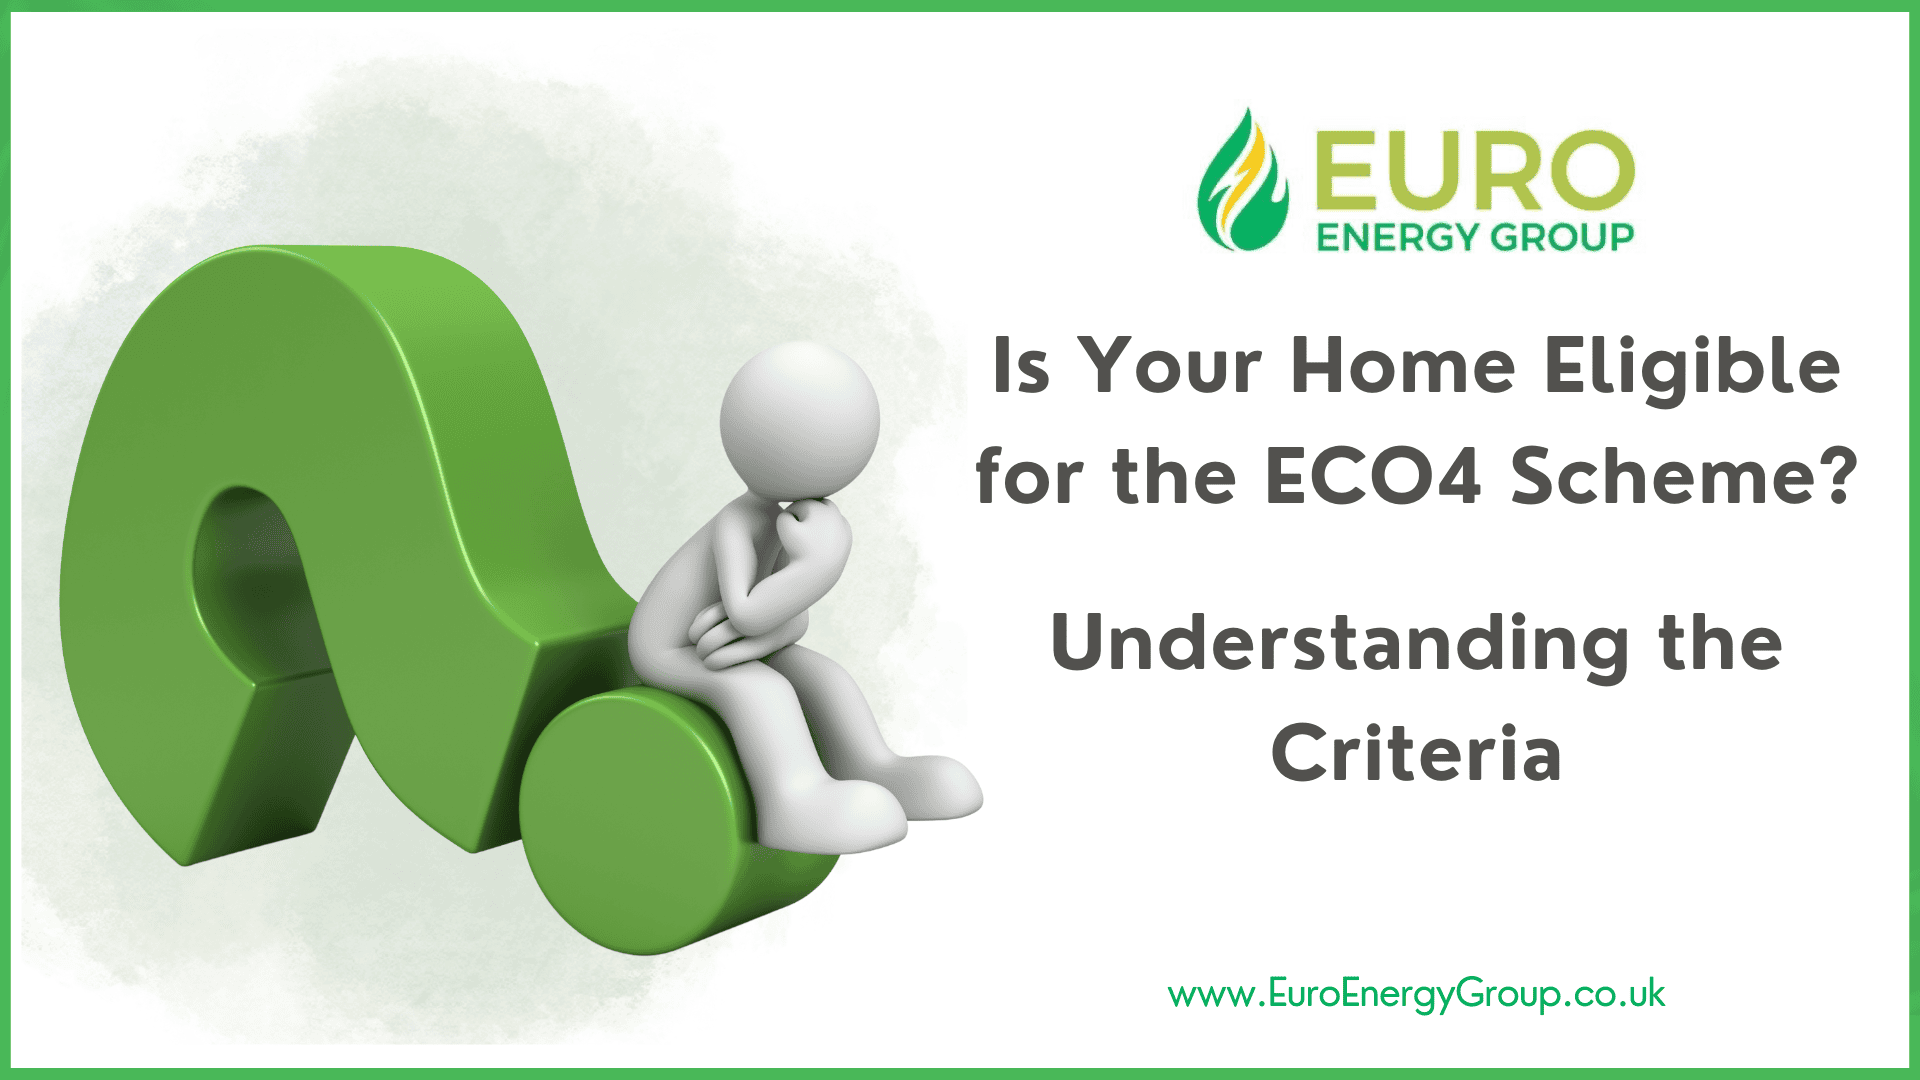 understanding eco4 criteria